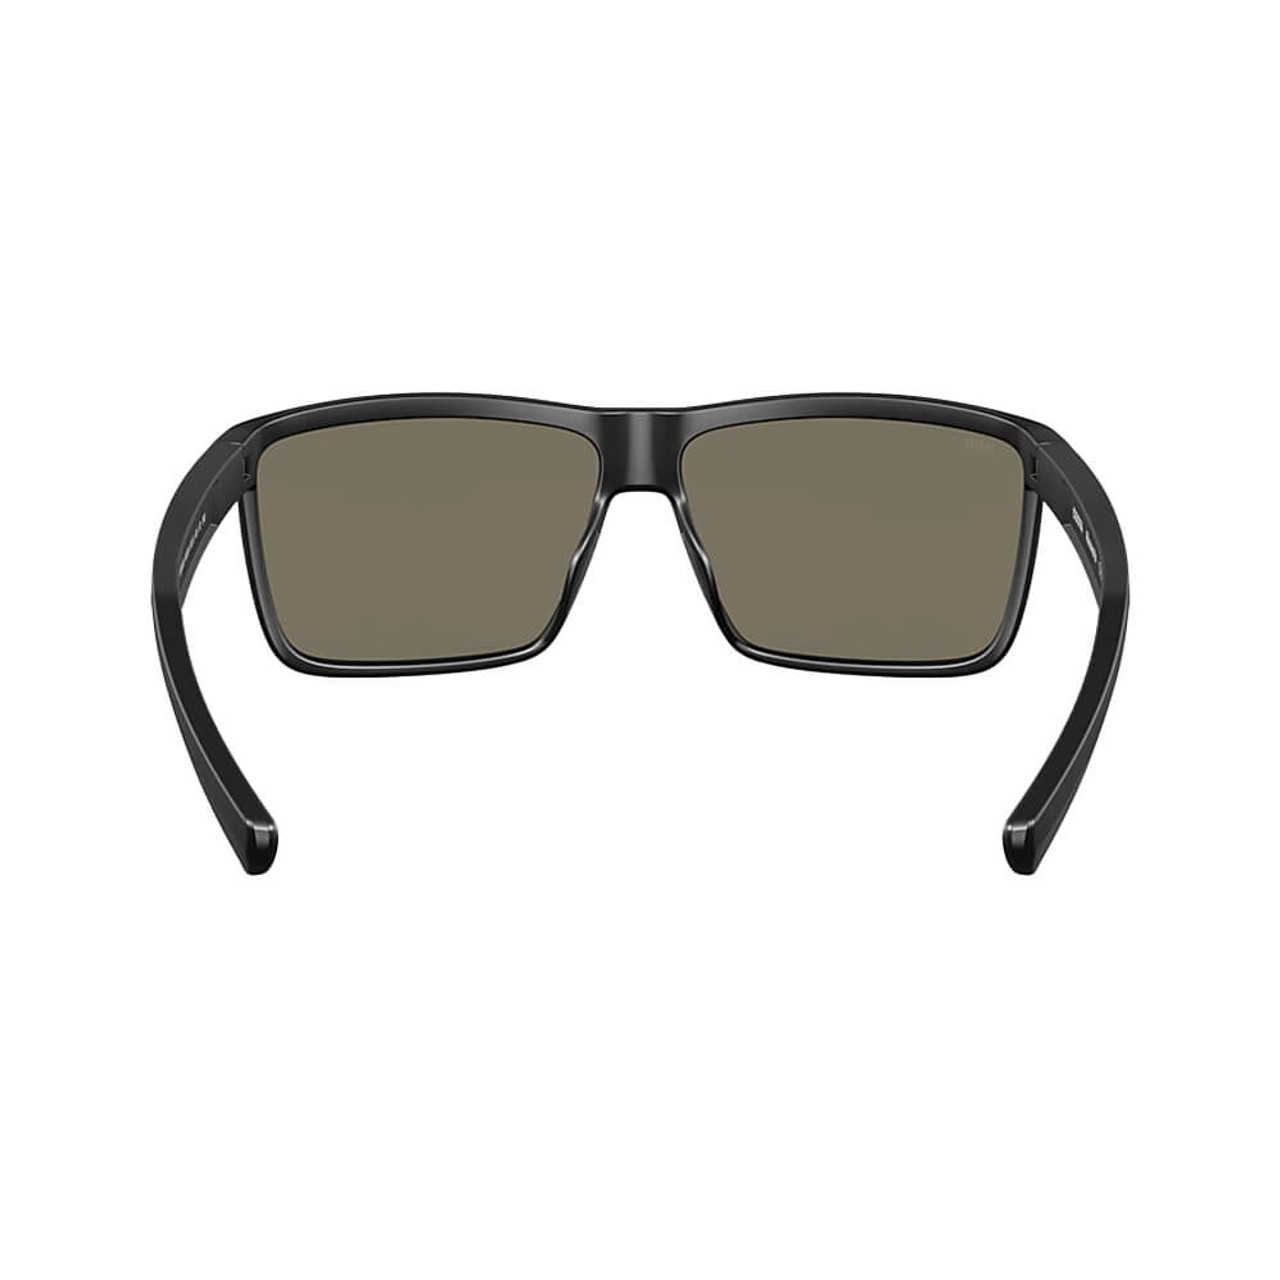 Costa Rinconcito 580G Polarized Sunglasses - Men